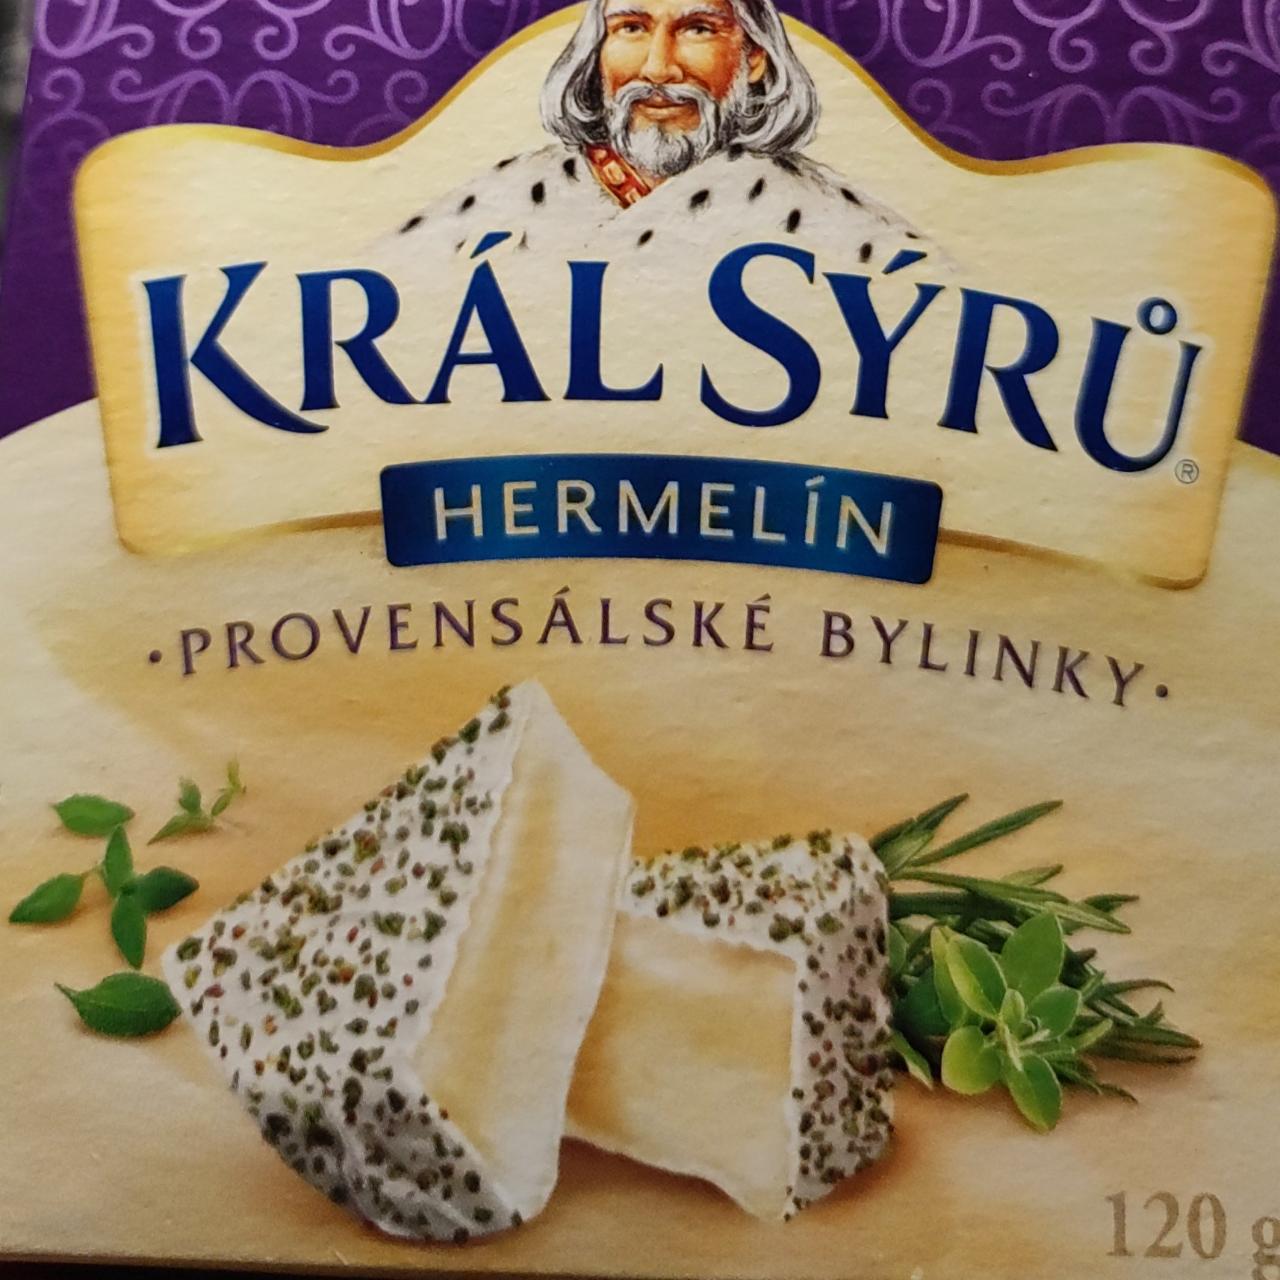 Képek - Penészes sajt provánszi fűszerekkel Král sýru